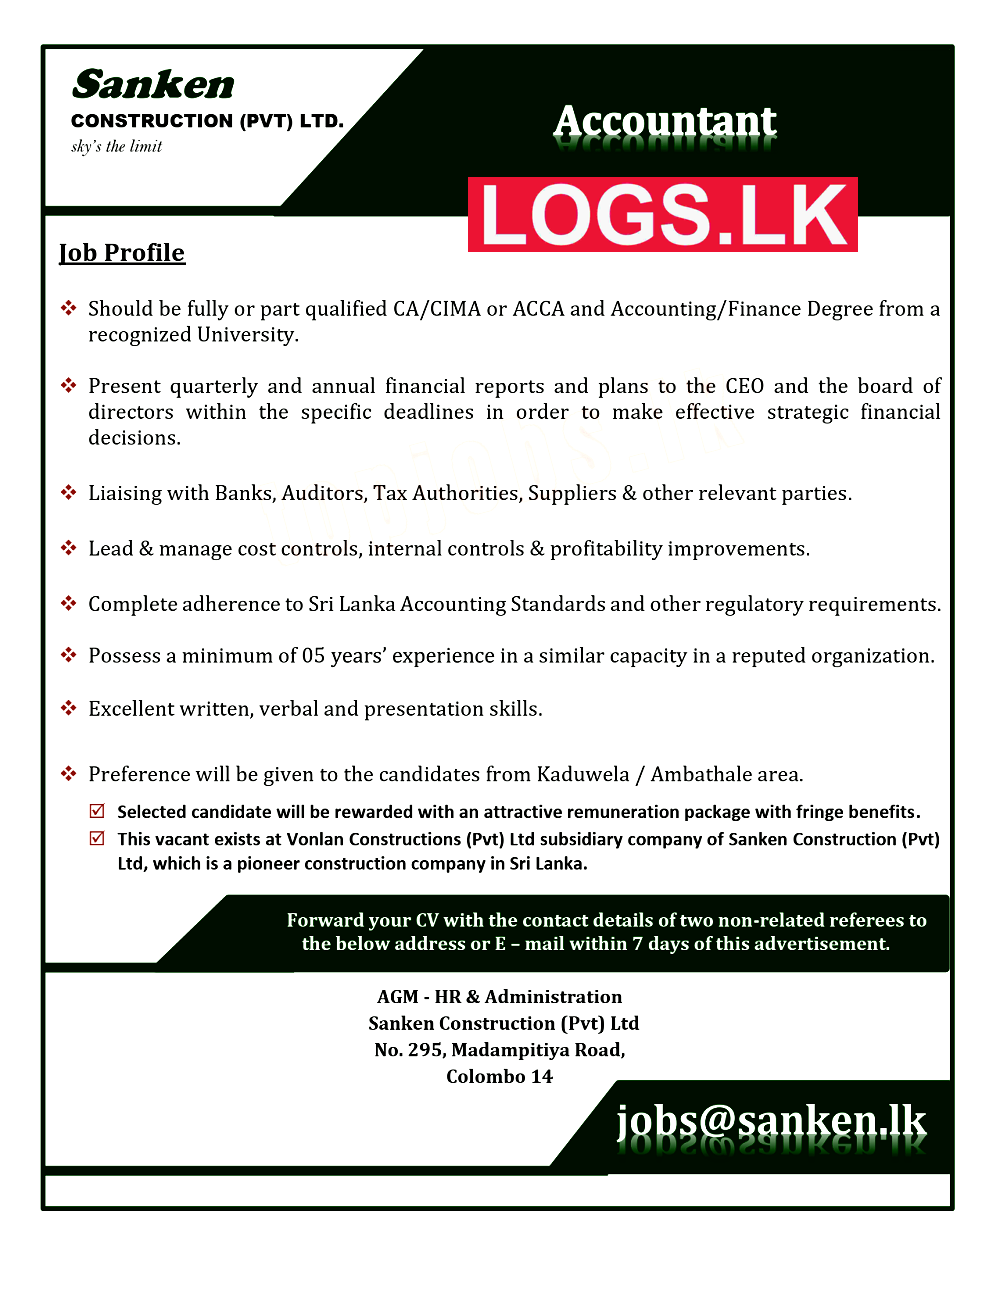 Accountant Job Vacancy at Sanken Construction (Pvt) Ltd Job Vacancies in Sri Lanka